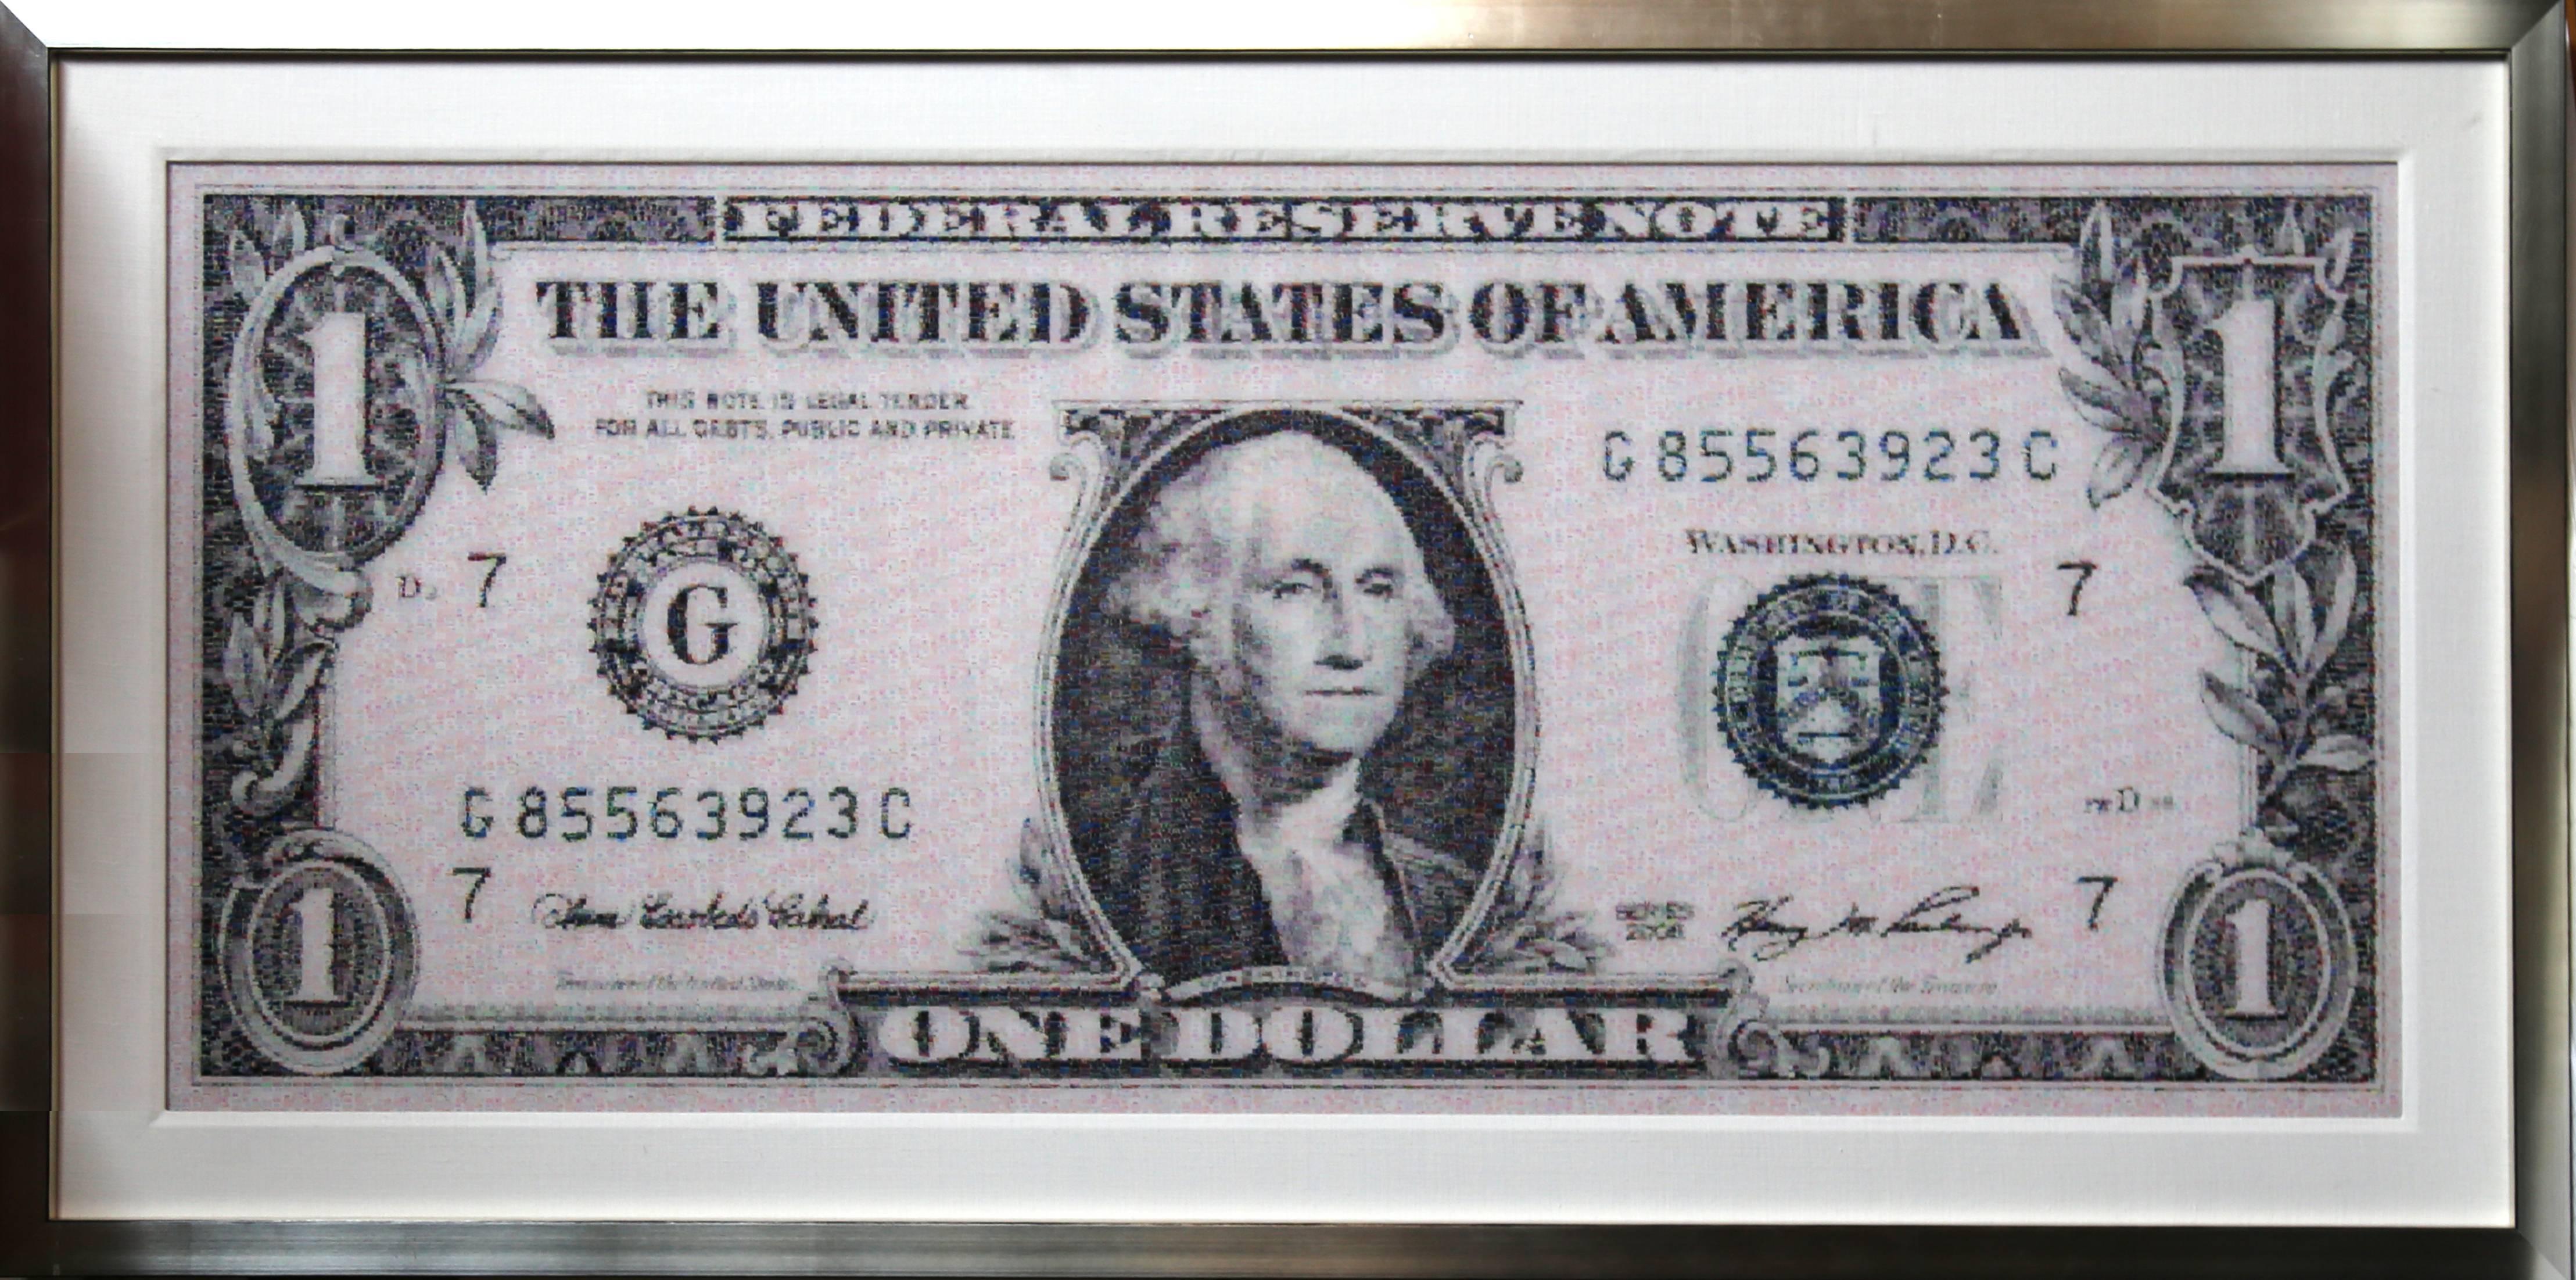 Künstler: Robert Silvers, Amerikaner (1968 - )
Titel: Ein-Dollar-Schein
Jahr: 2010
Medium: Digitales Fotomosaik auf Fuji Crystal Archive, aufgezogen auf Aluminium
Auflage: 10
Größe: 27 x 63 in. (68,58 x 160,02 cm)
Rahmen: 35 x 71,5 x 2,25 Zoll